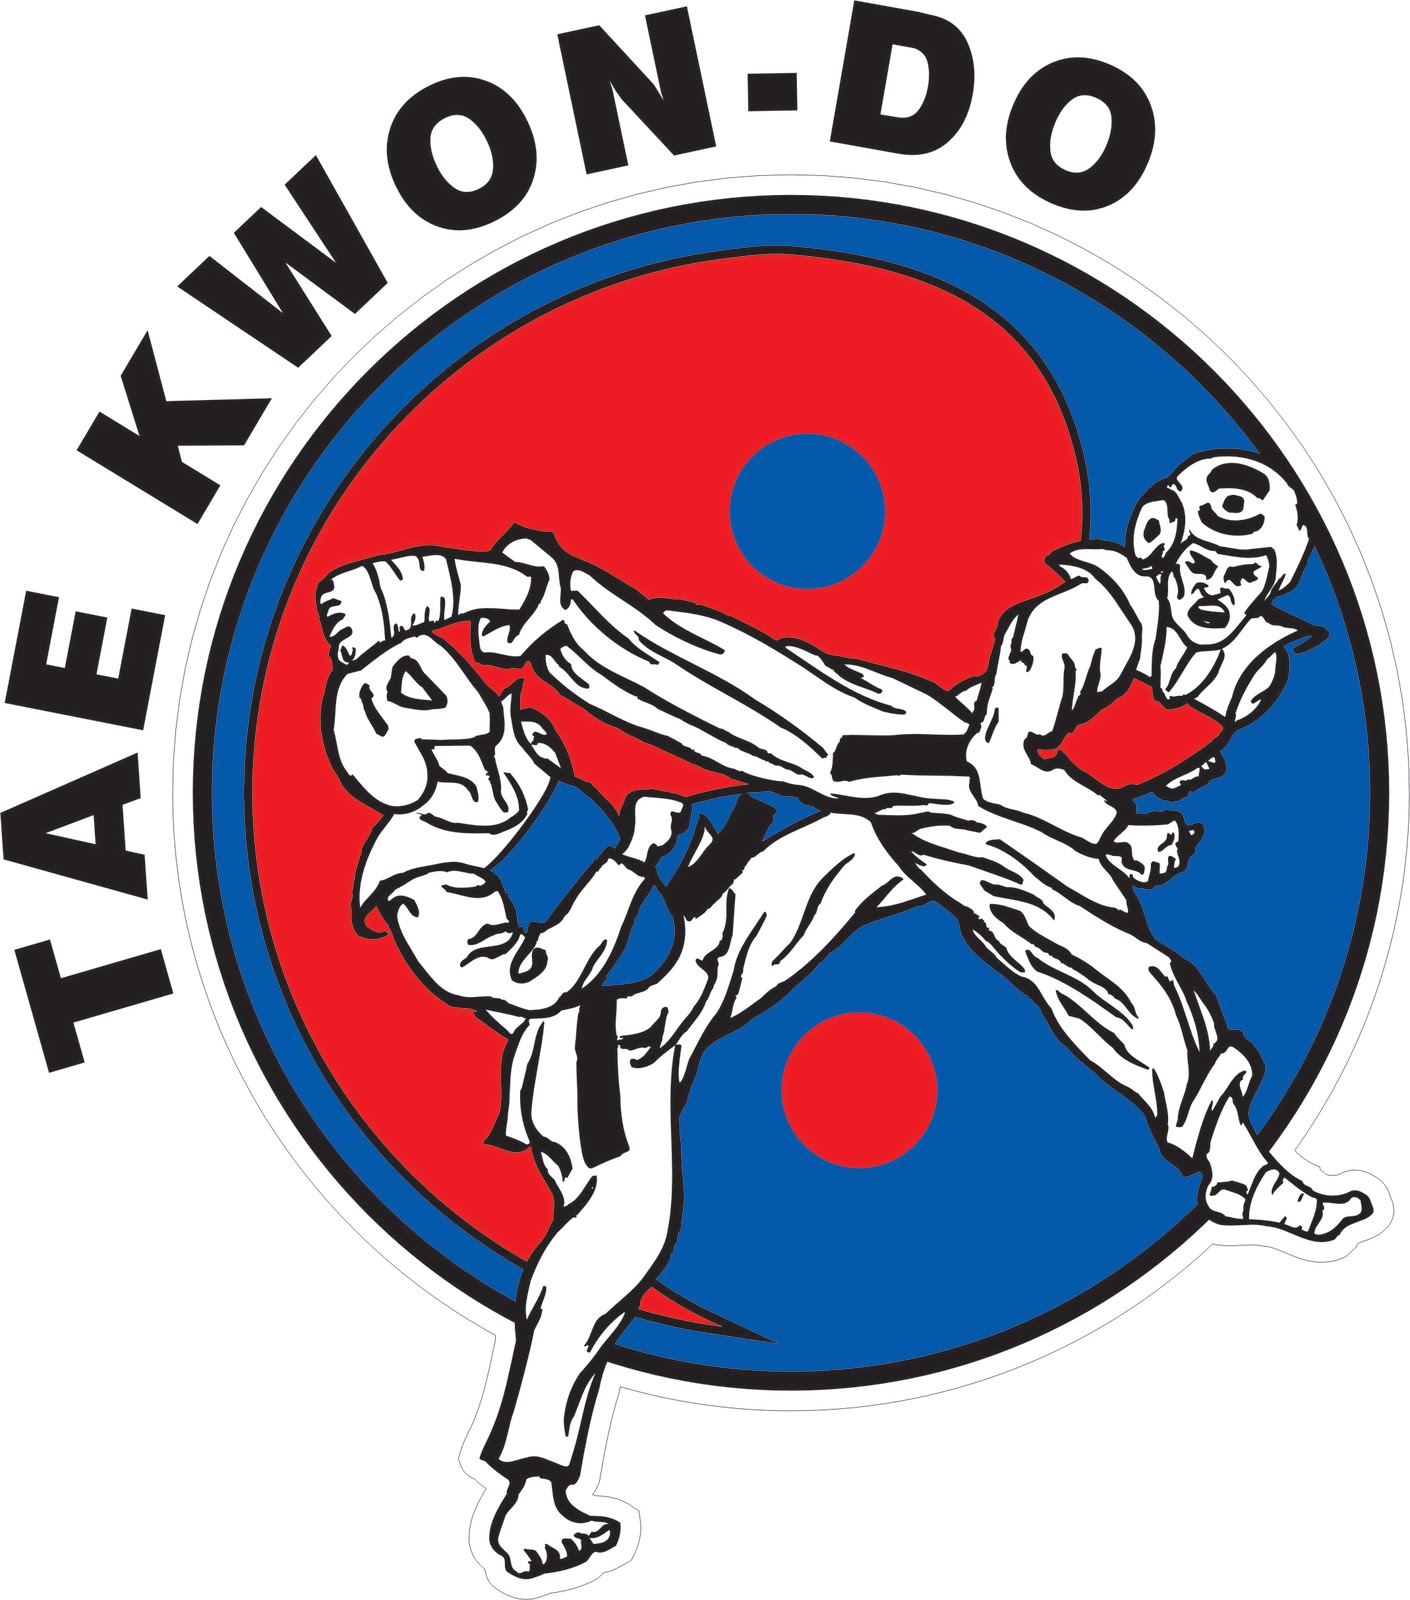 TAE-KWON-DO kang